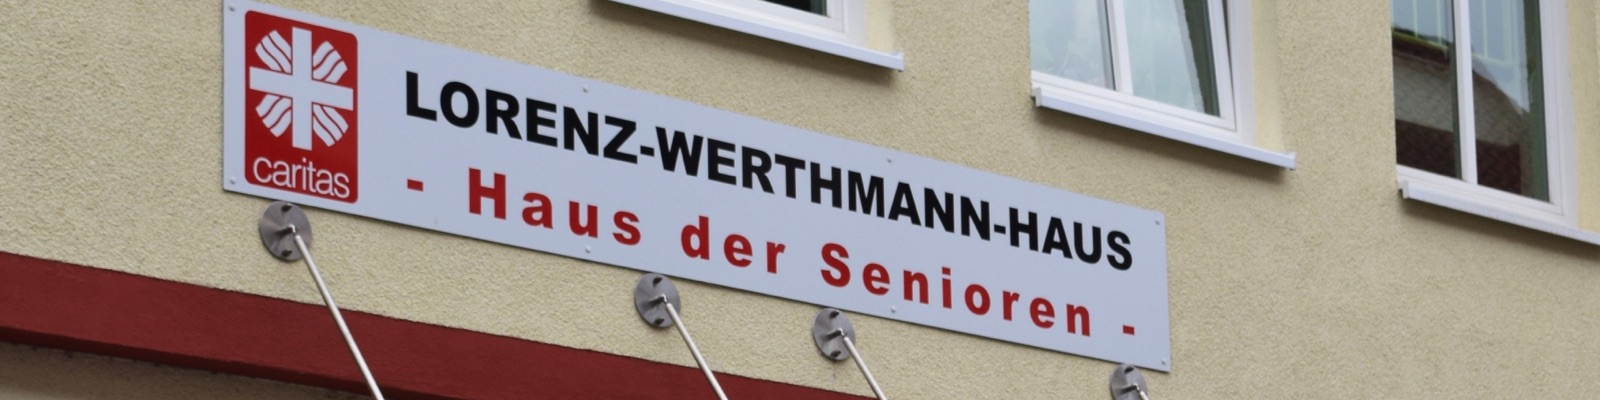 Lorzenz-Werthmann-Haus